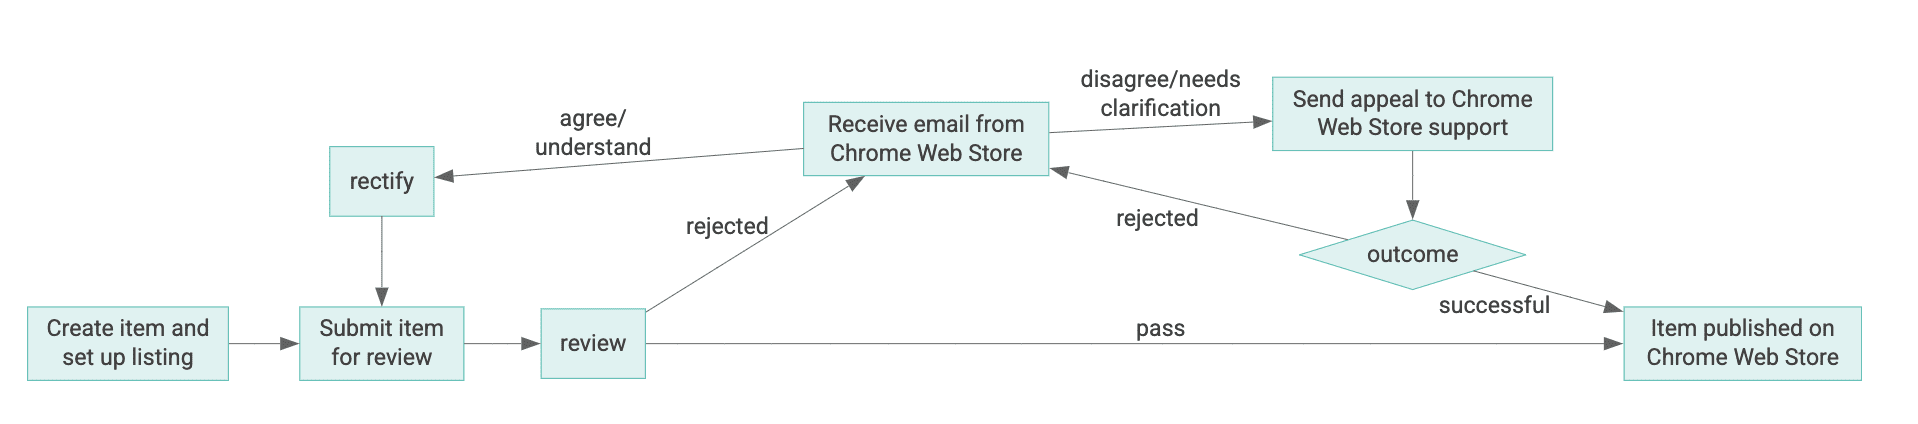 Diagramm des Lebenszyklus eines Chrome Web Store-Artikels